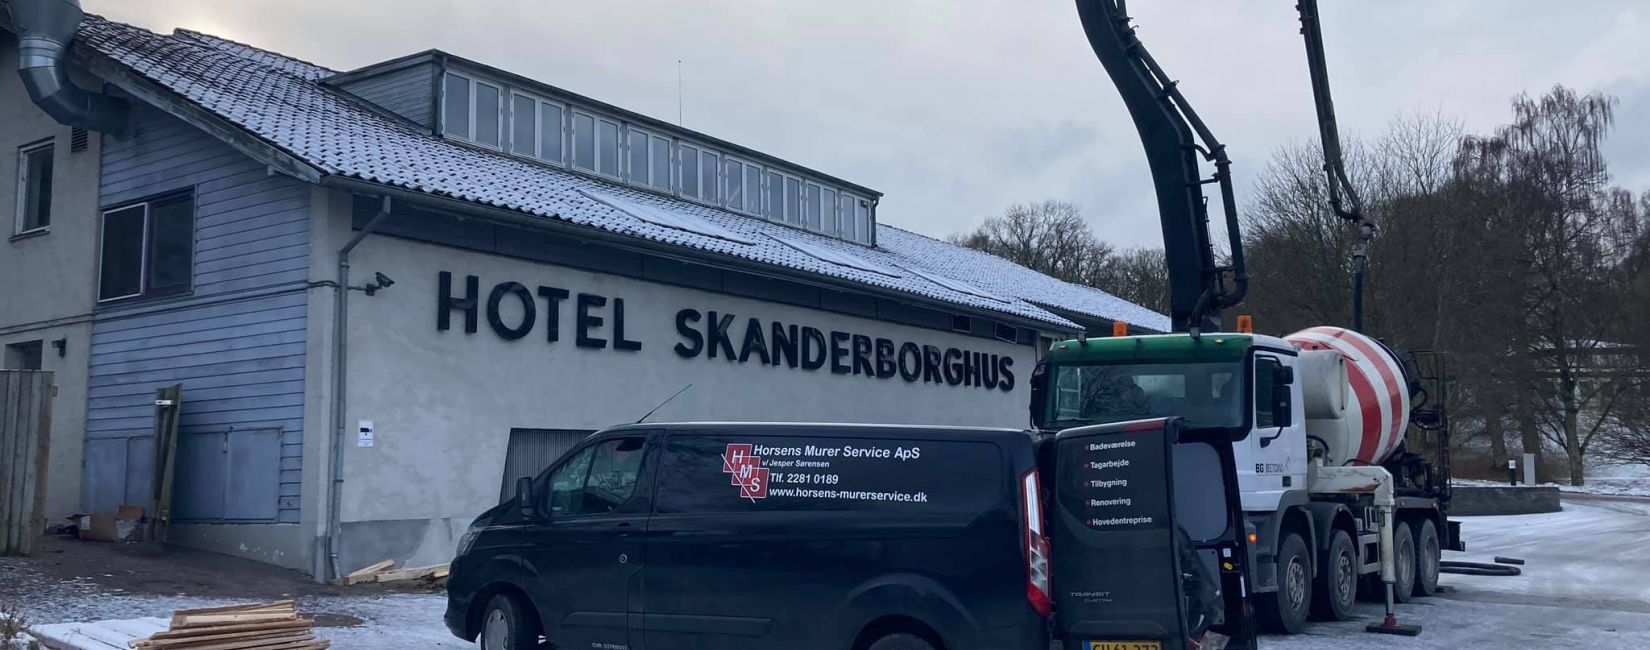 Hotel Skanderborghus 